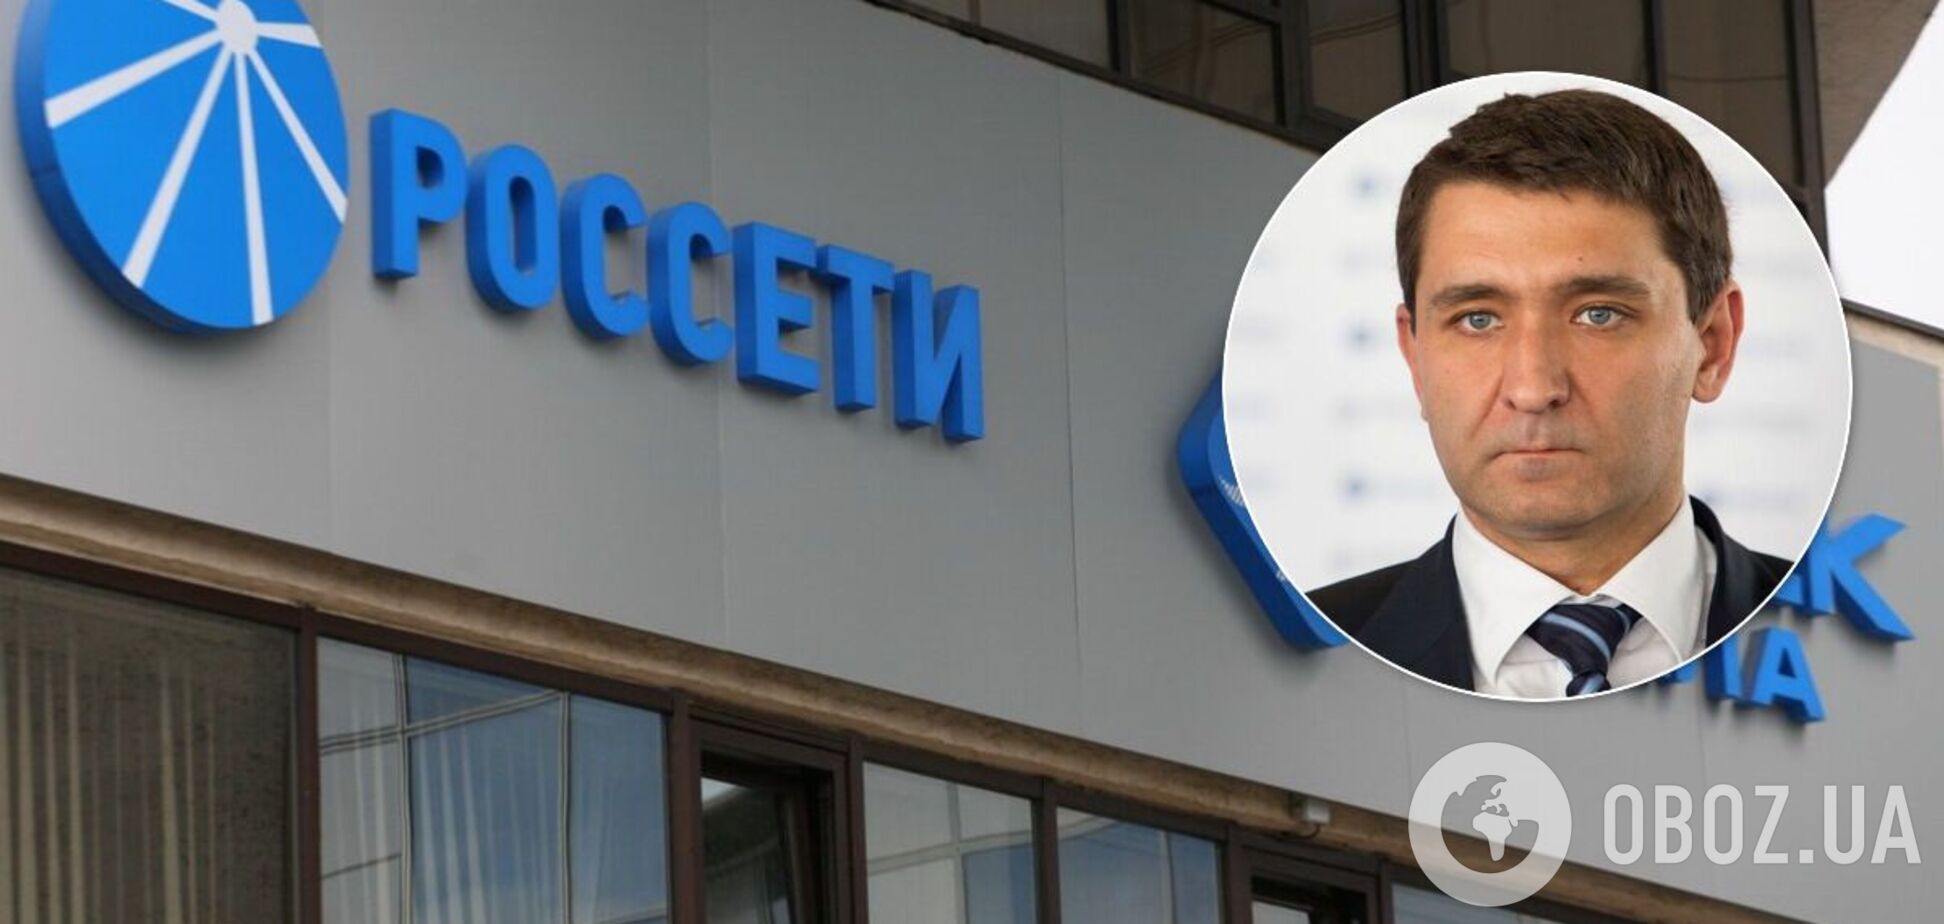 Зять Медведчука возглавил крупную компанию в России